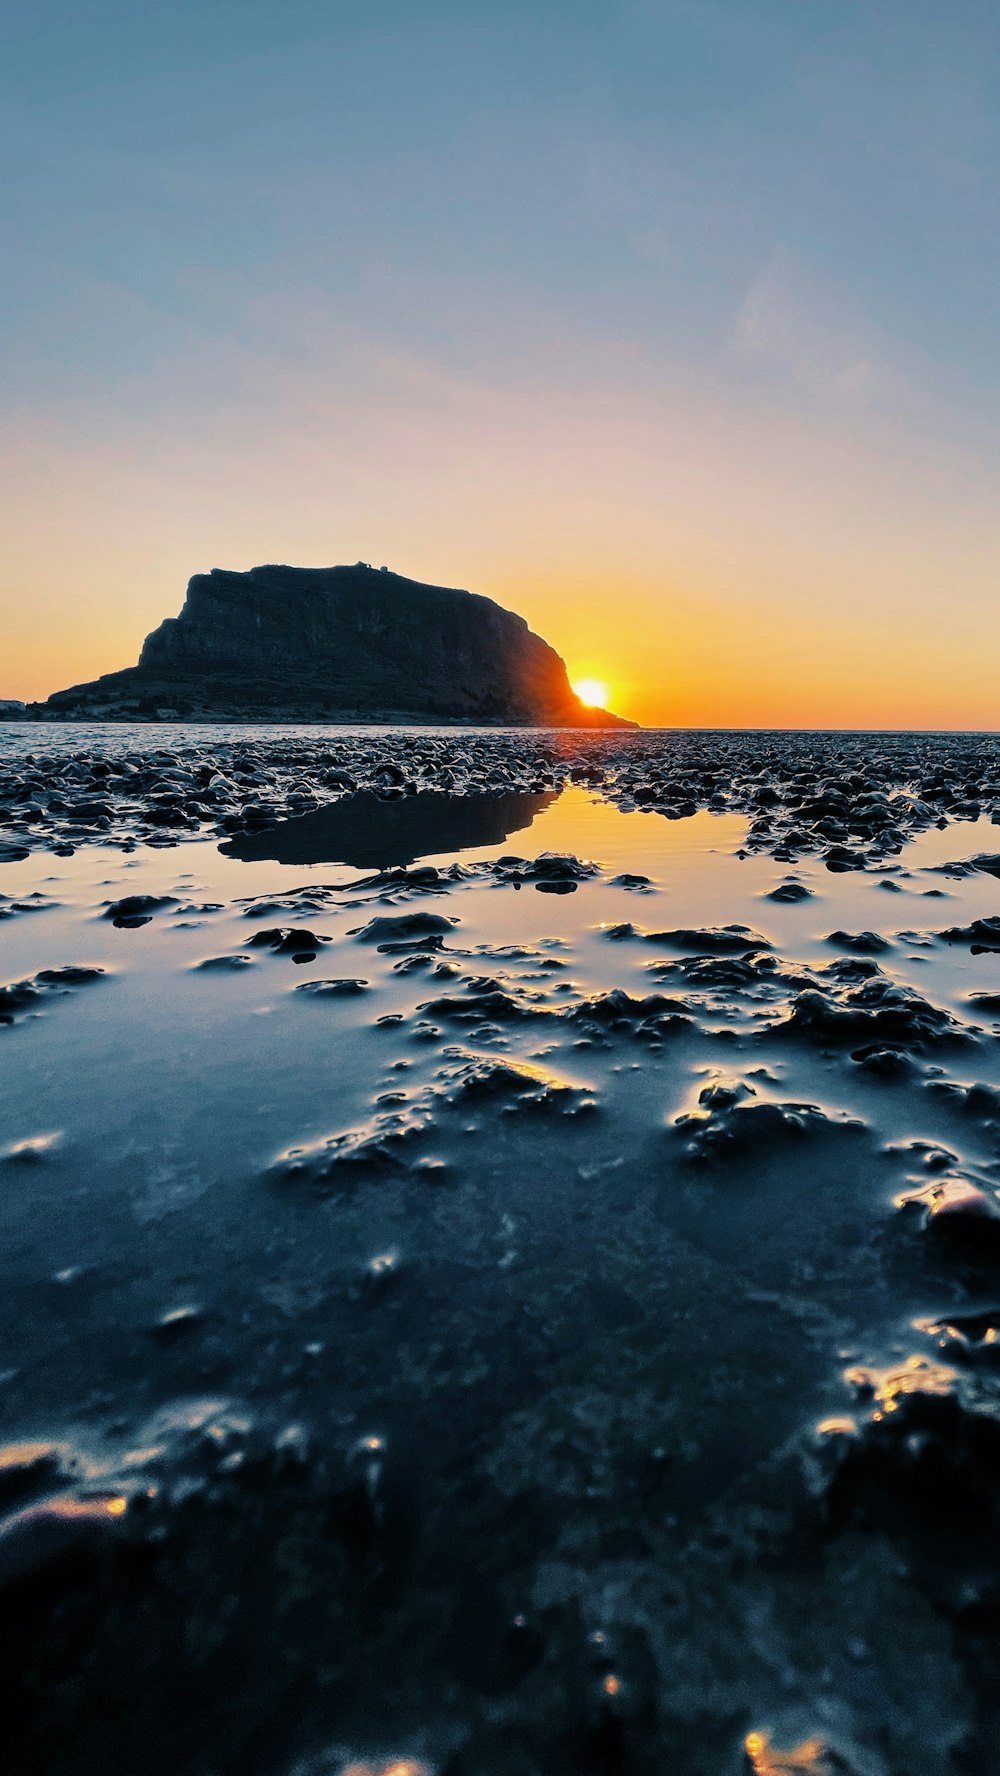 Le soleil se couche sur une plage rocheuse